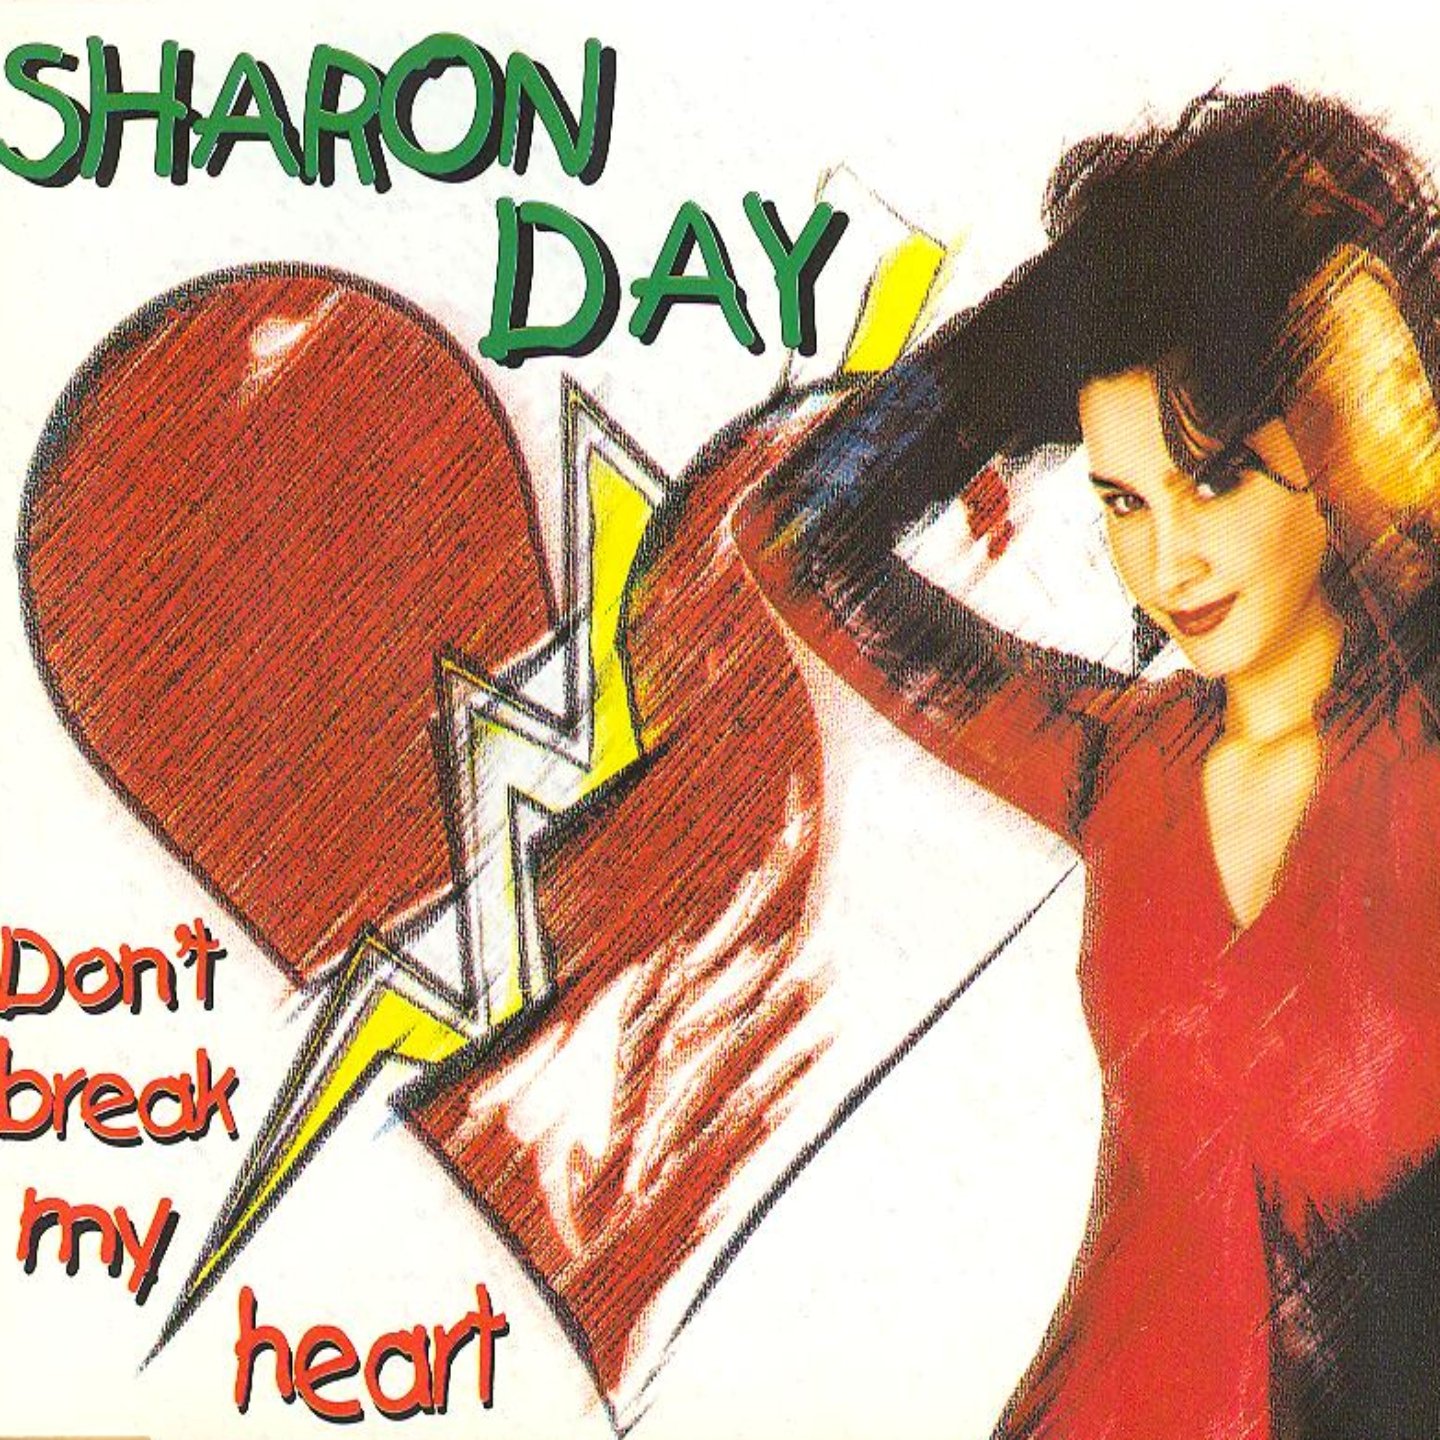 Break my heart if you can. Don't Break my Heart. Sharon Day. Please don't Break my Heart альбом. DJ Space'c don't Break my Heart.